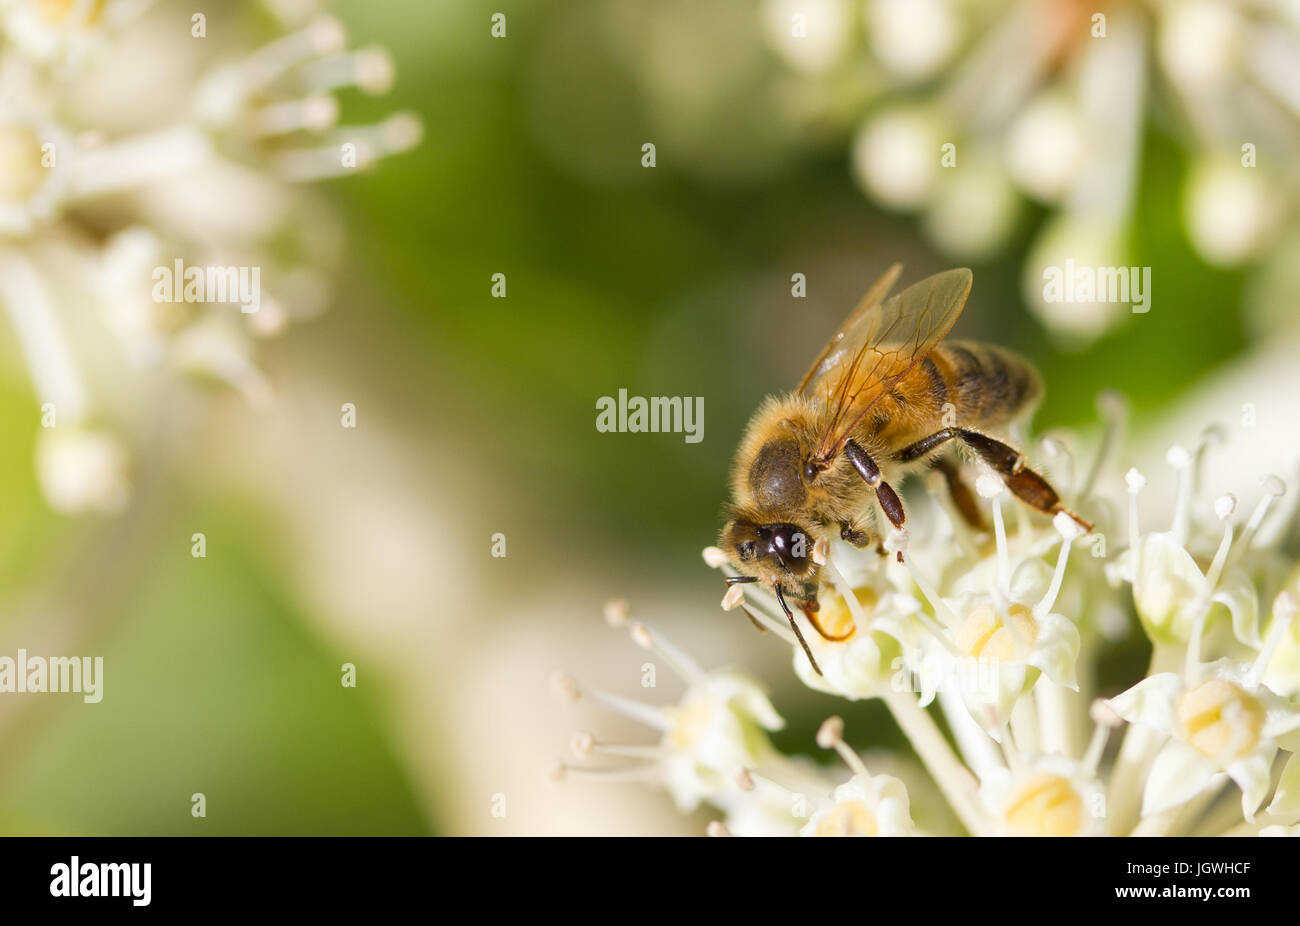 La collecte du pollen d'Abeille sur fleur blanche avec fond vert photo floue Banque D'Images